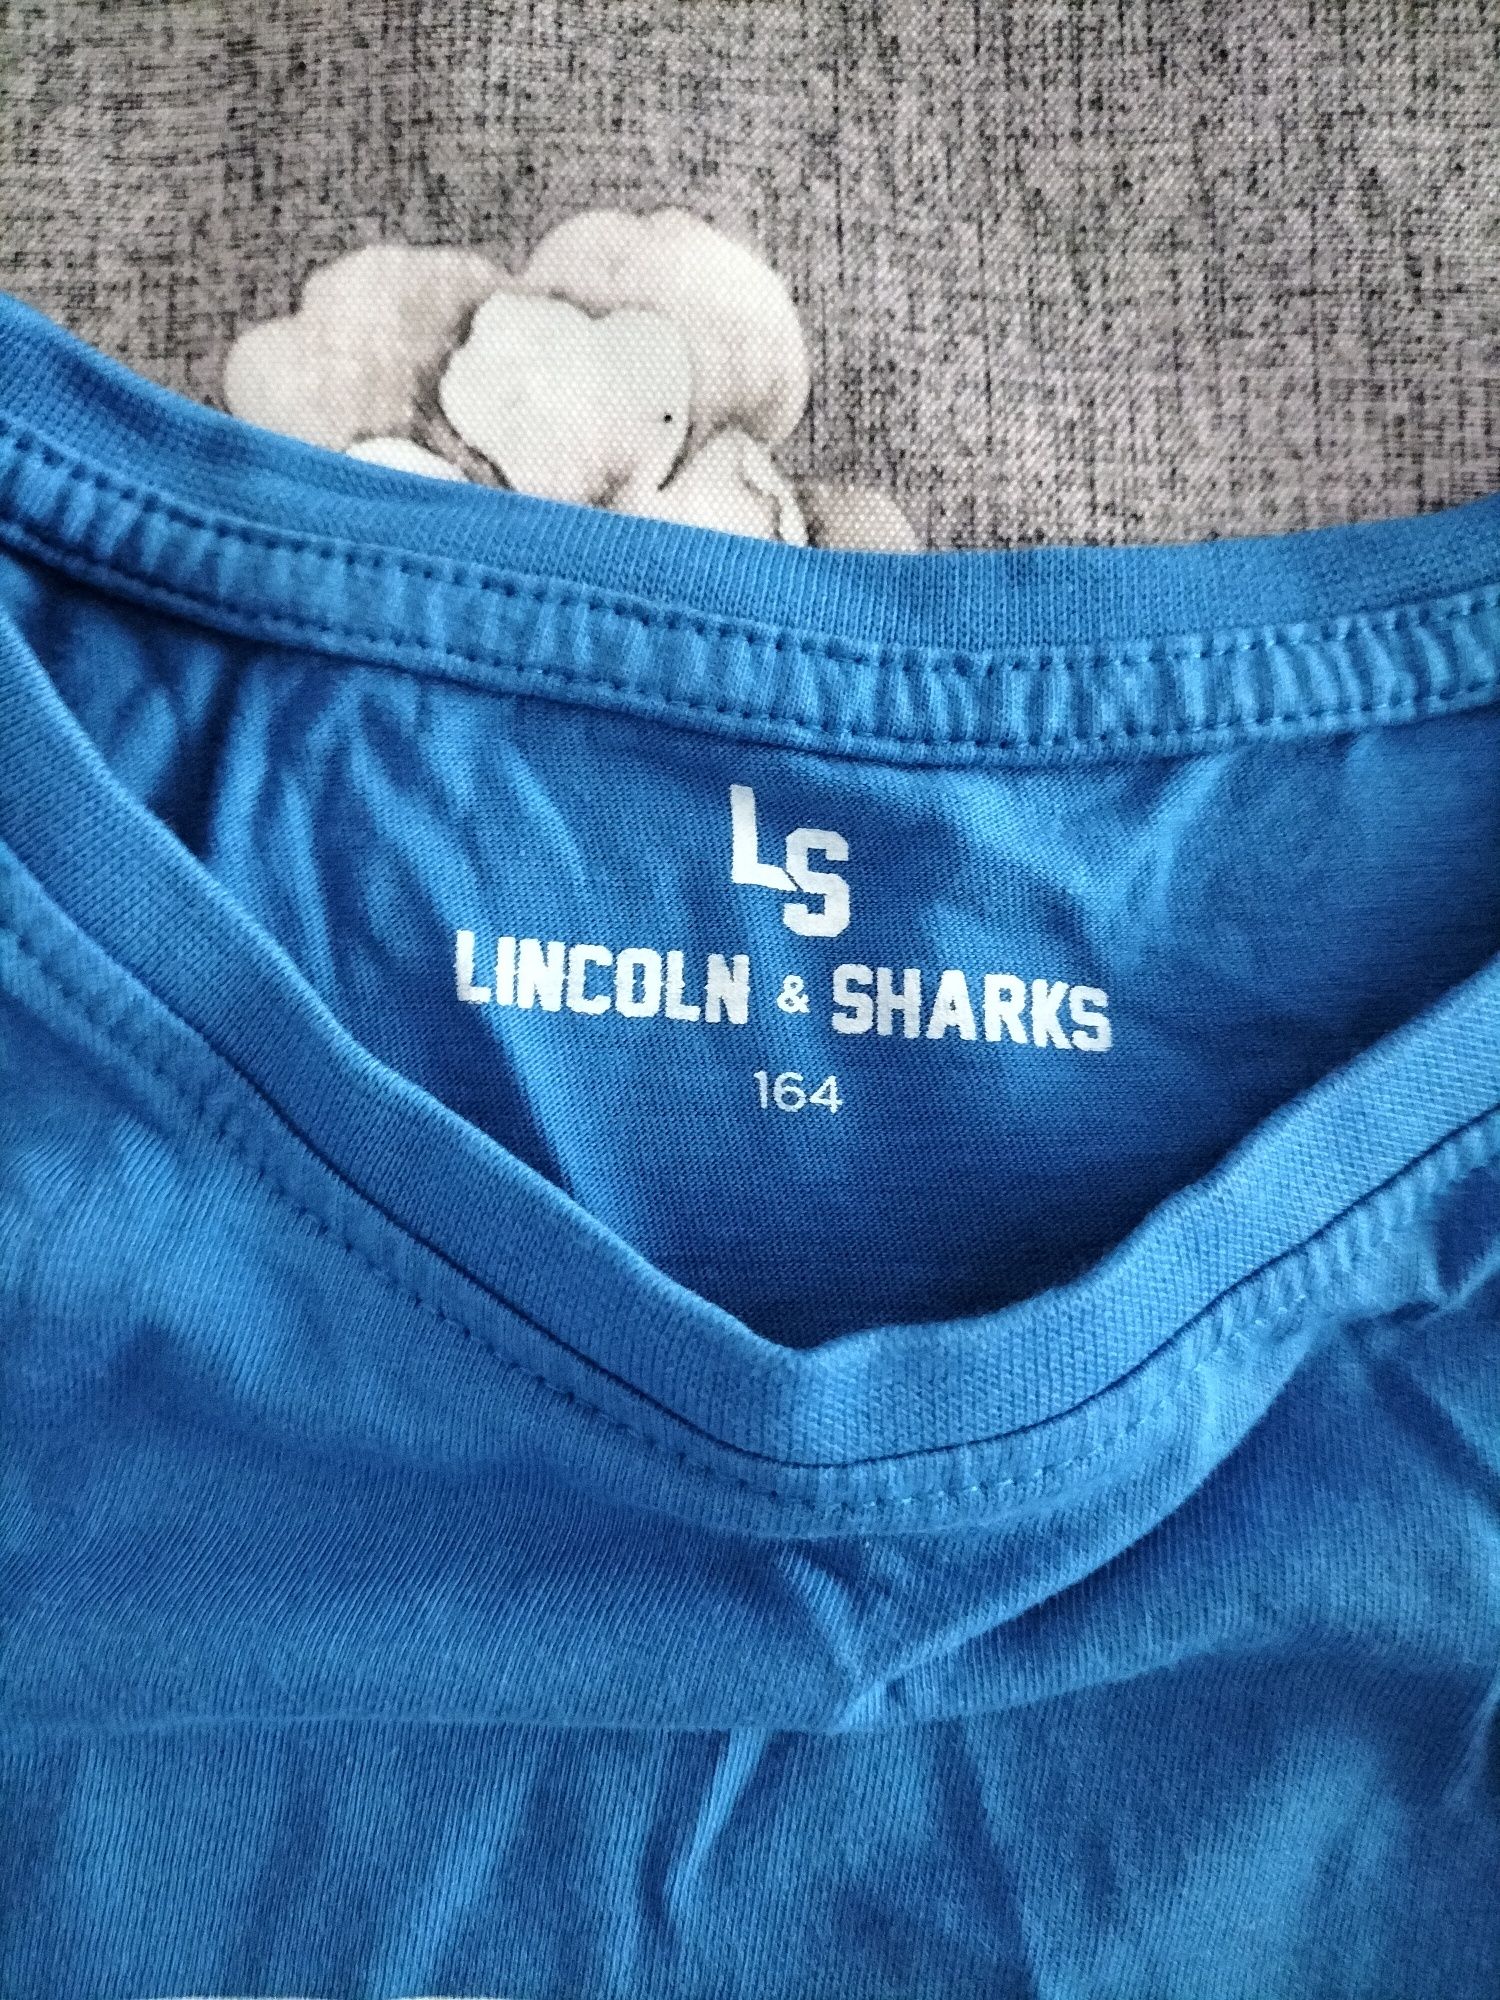 Linkoln & sharks bluzka chłopięca 164cm